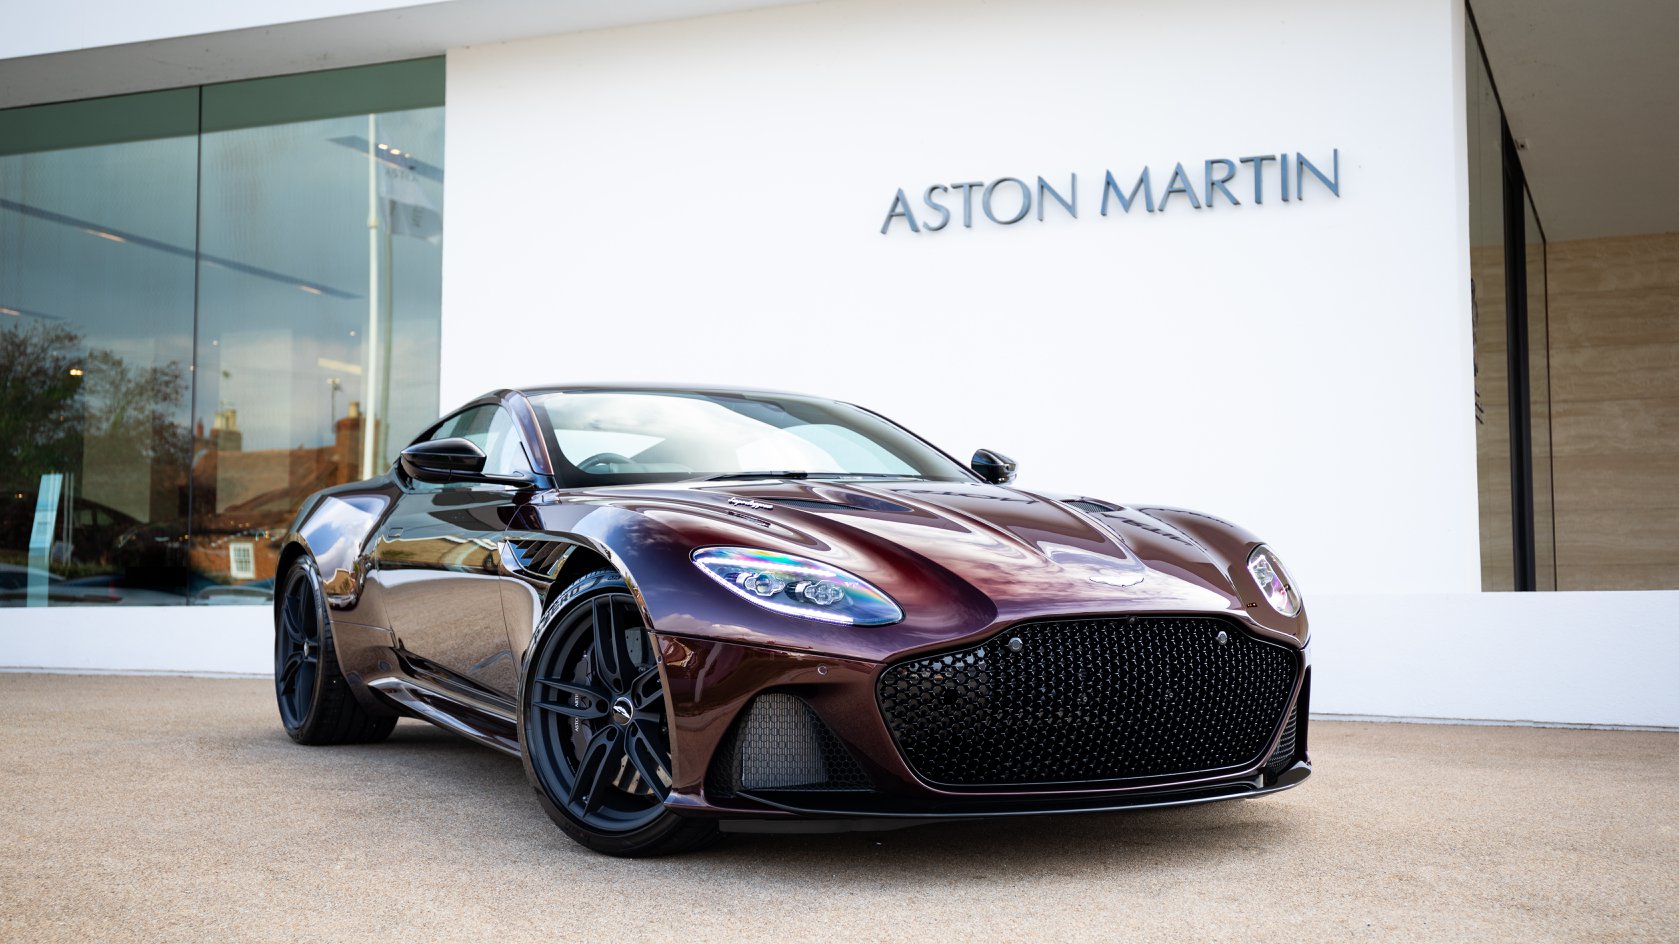 Aston Martin Works on Twitter: "Ready for first owner; Divine Red DBS Superleggera. #AstonMartin #DBS #Superleggera #V12 #Supercar #BEAUTIFULISABSOLUTE https://t.co/SpqmMpTISI" Twitter